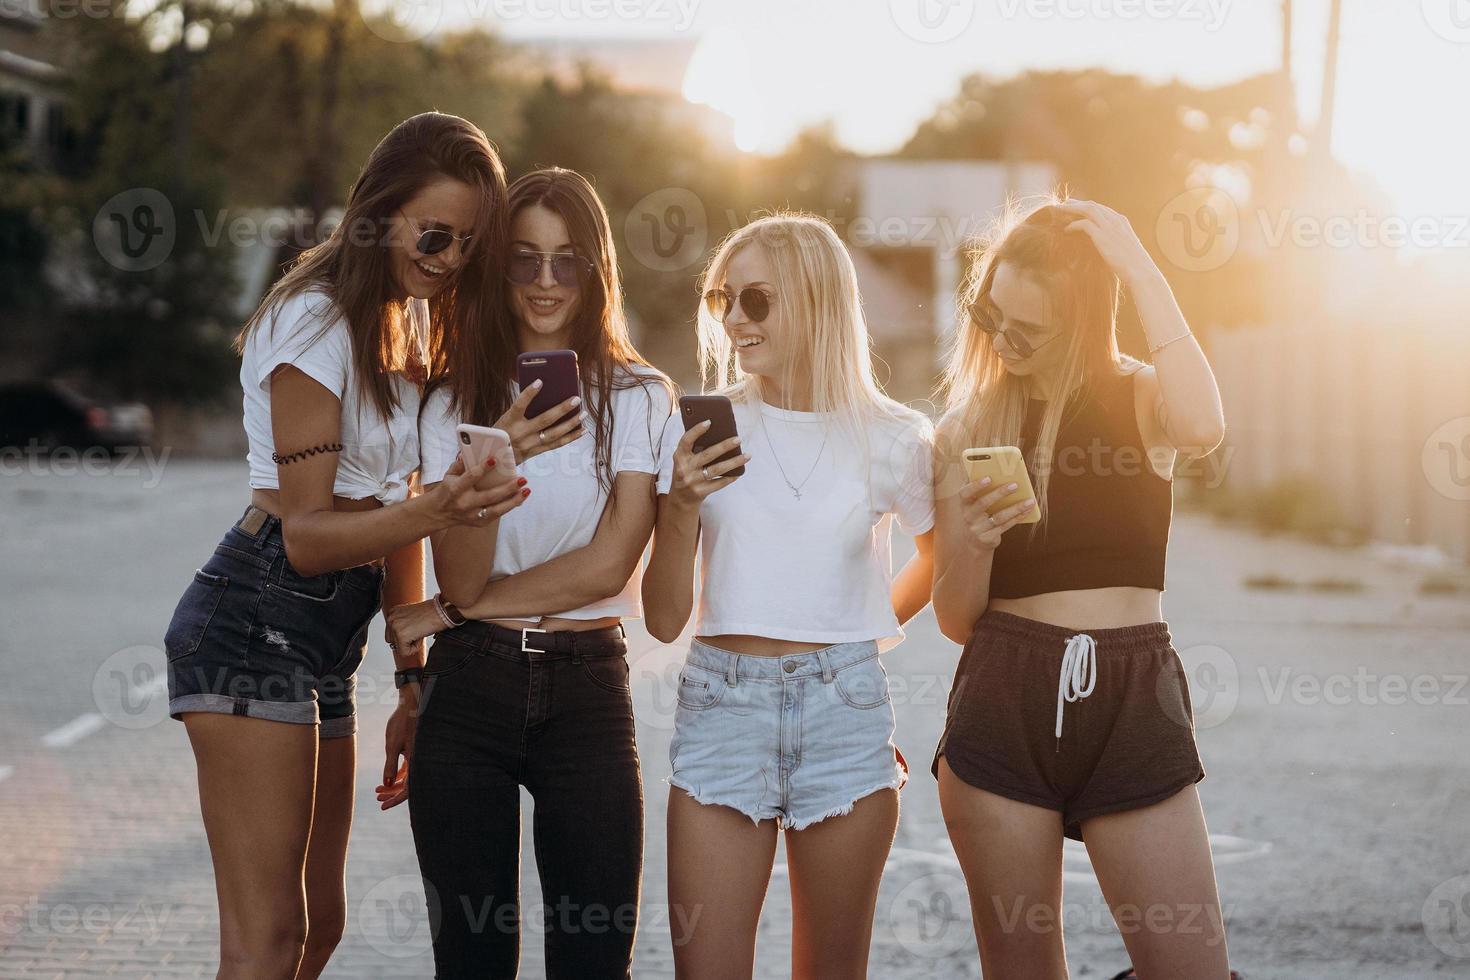 cuatro mujeres atractivas están de pie en el estacionamiento de automóviles con teléfonos inteligentes foto